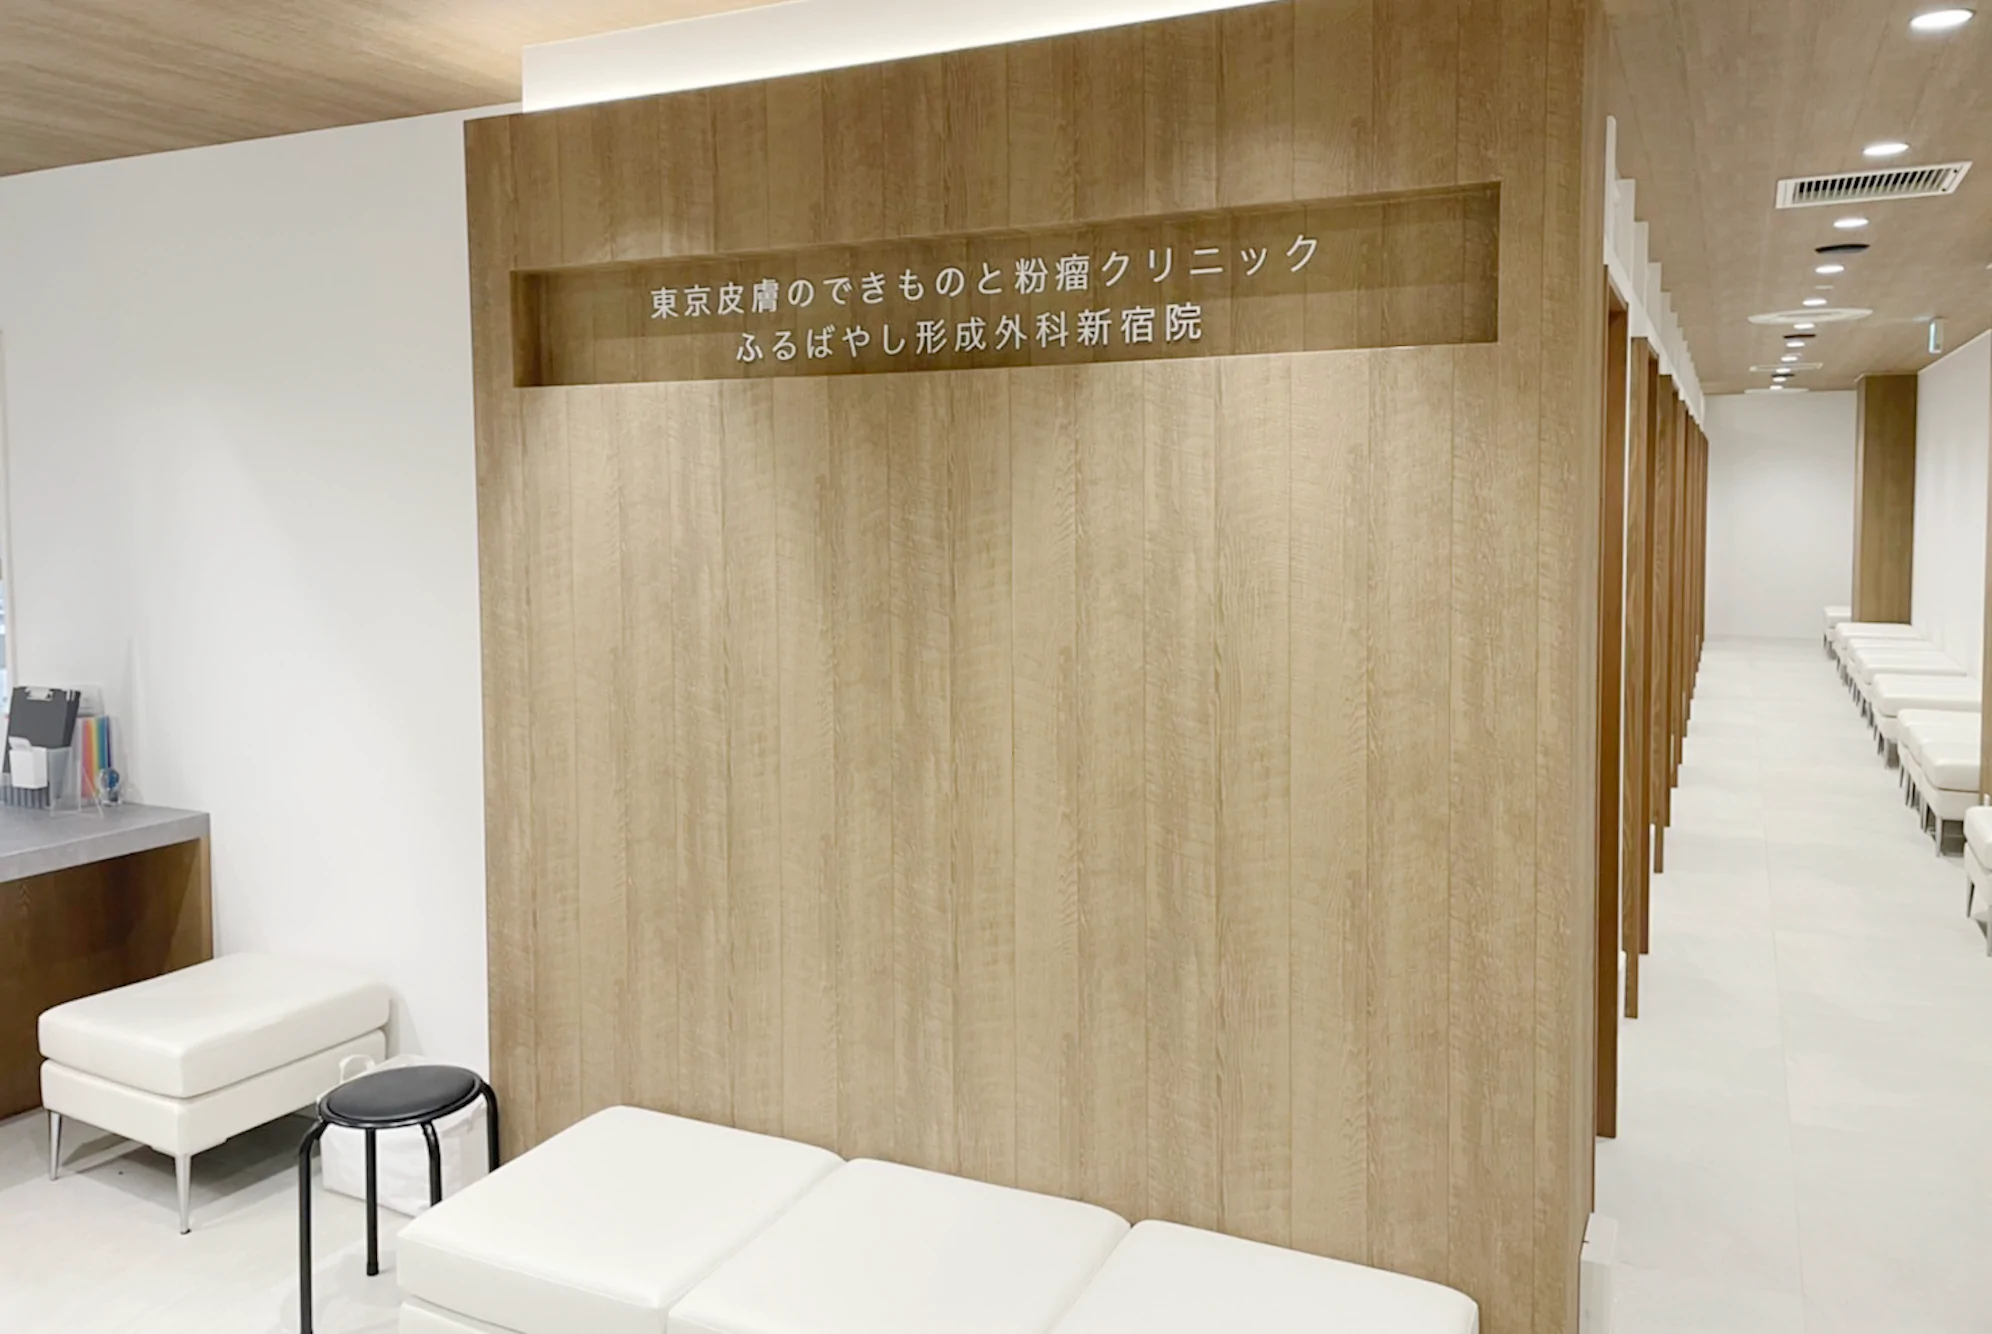 東京皮膚のできものと粉瘤クリニックふるばやし形成外科 新宿院photo